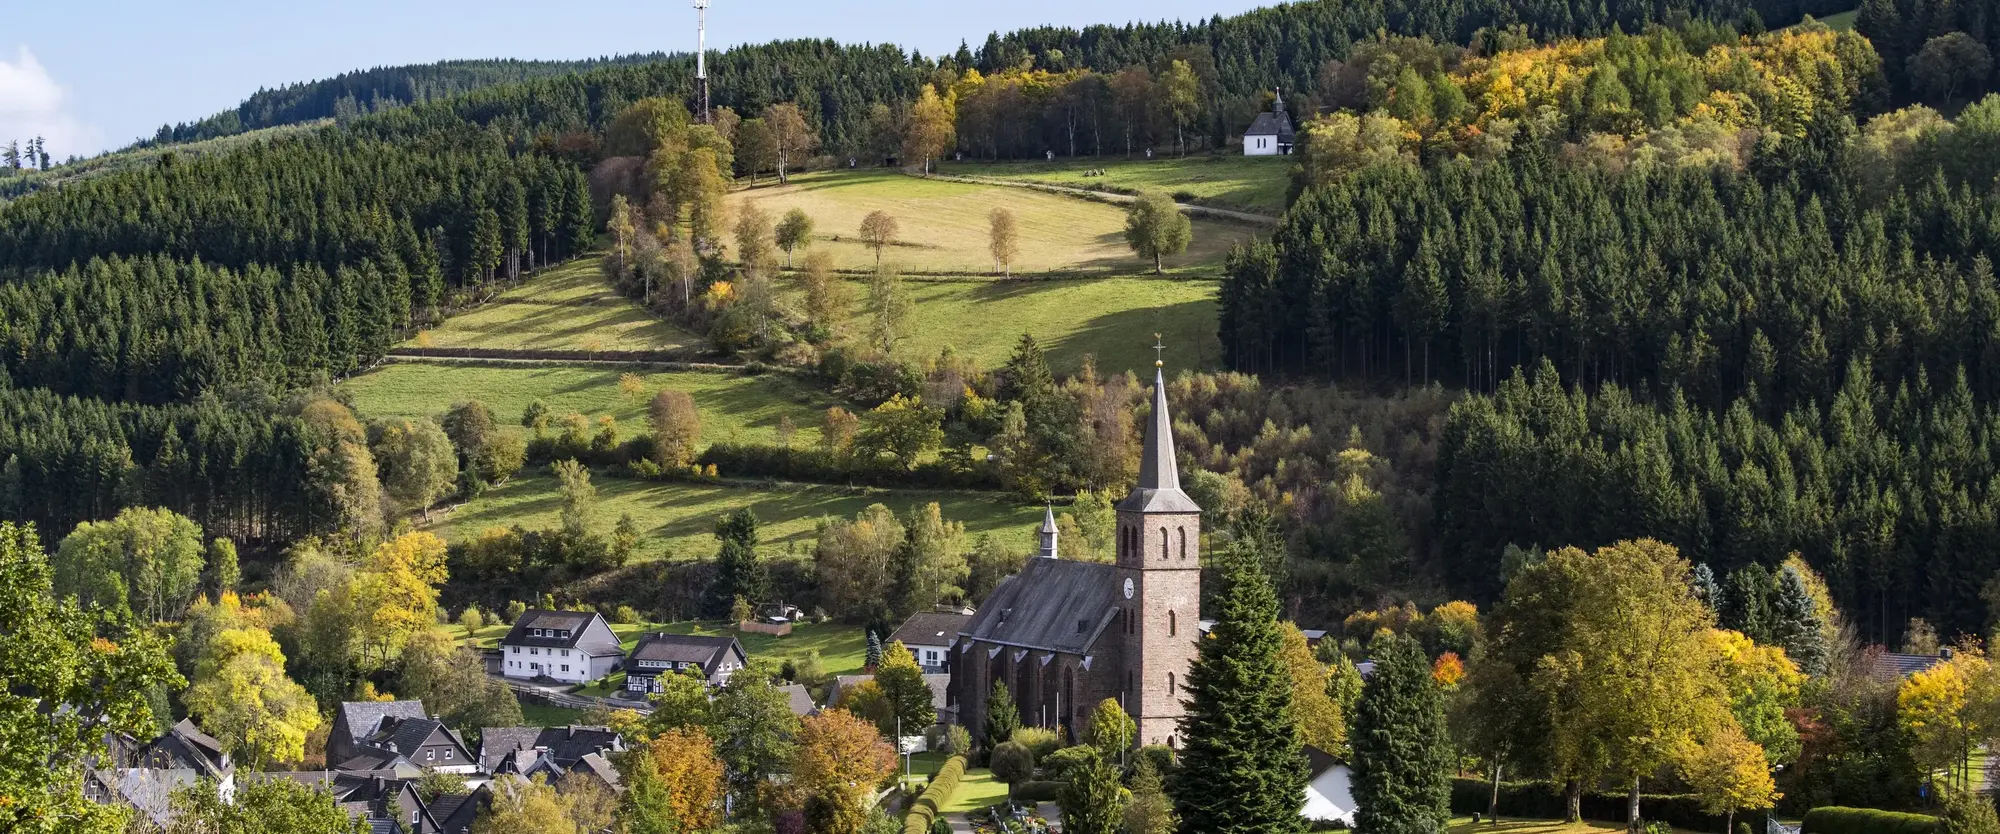 Blick auf die Ortschaft Züschen mit Kirchturm umgeben von Wäldern und Bergen.